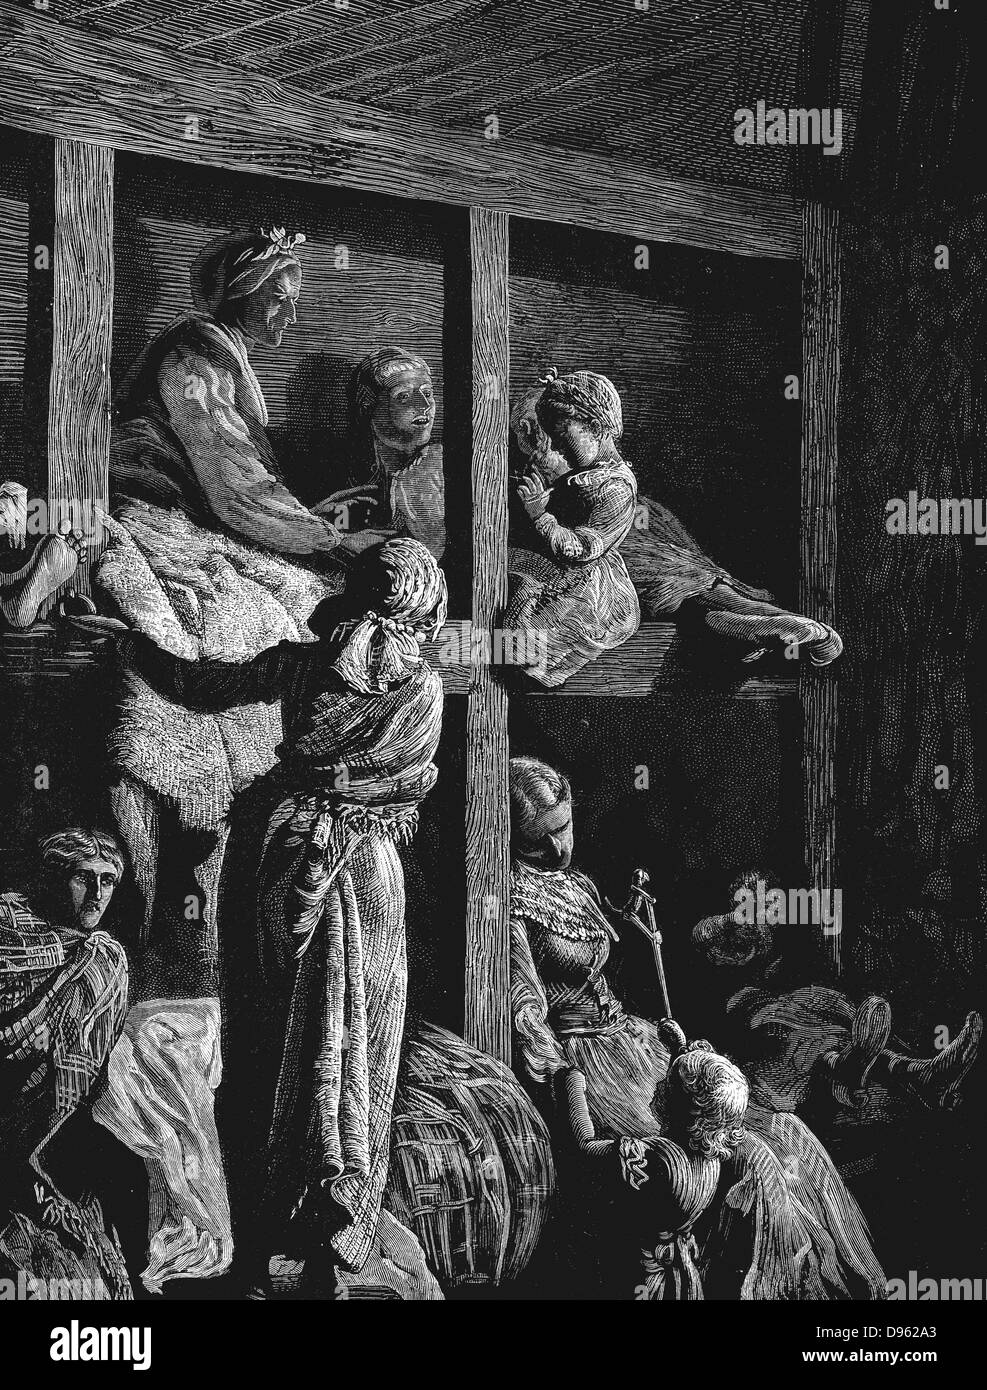 British emigranti nel loro modo di America come passeggeri steerage. Da "La grafica', Londra, marzo 1870. Incisione su legno Foto Stock